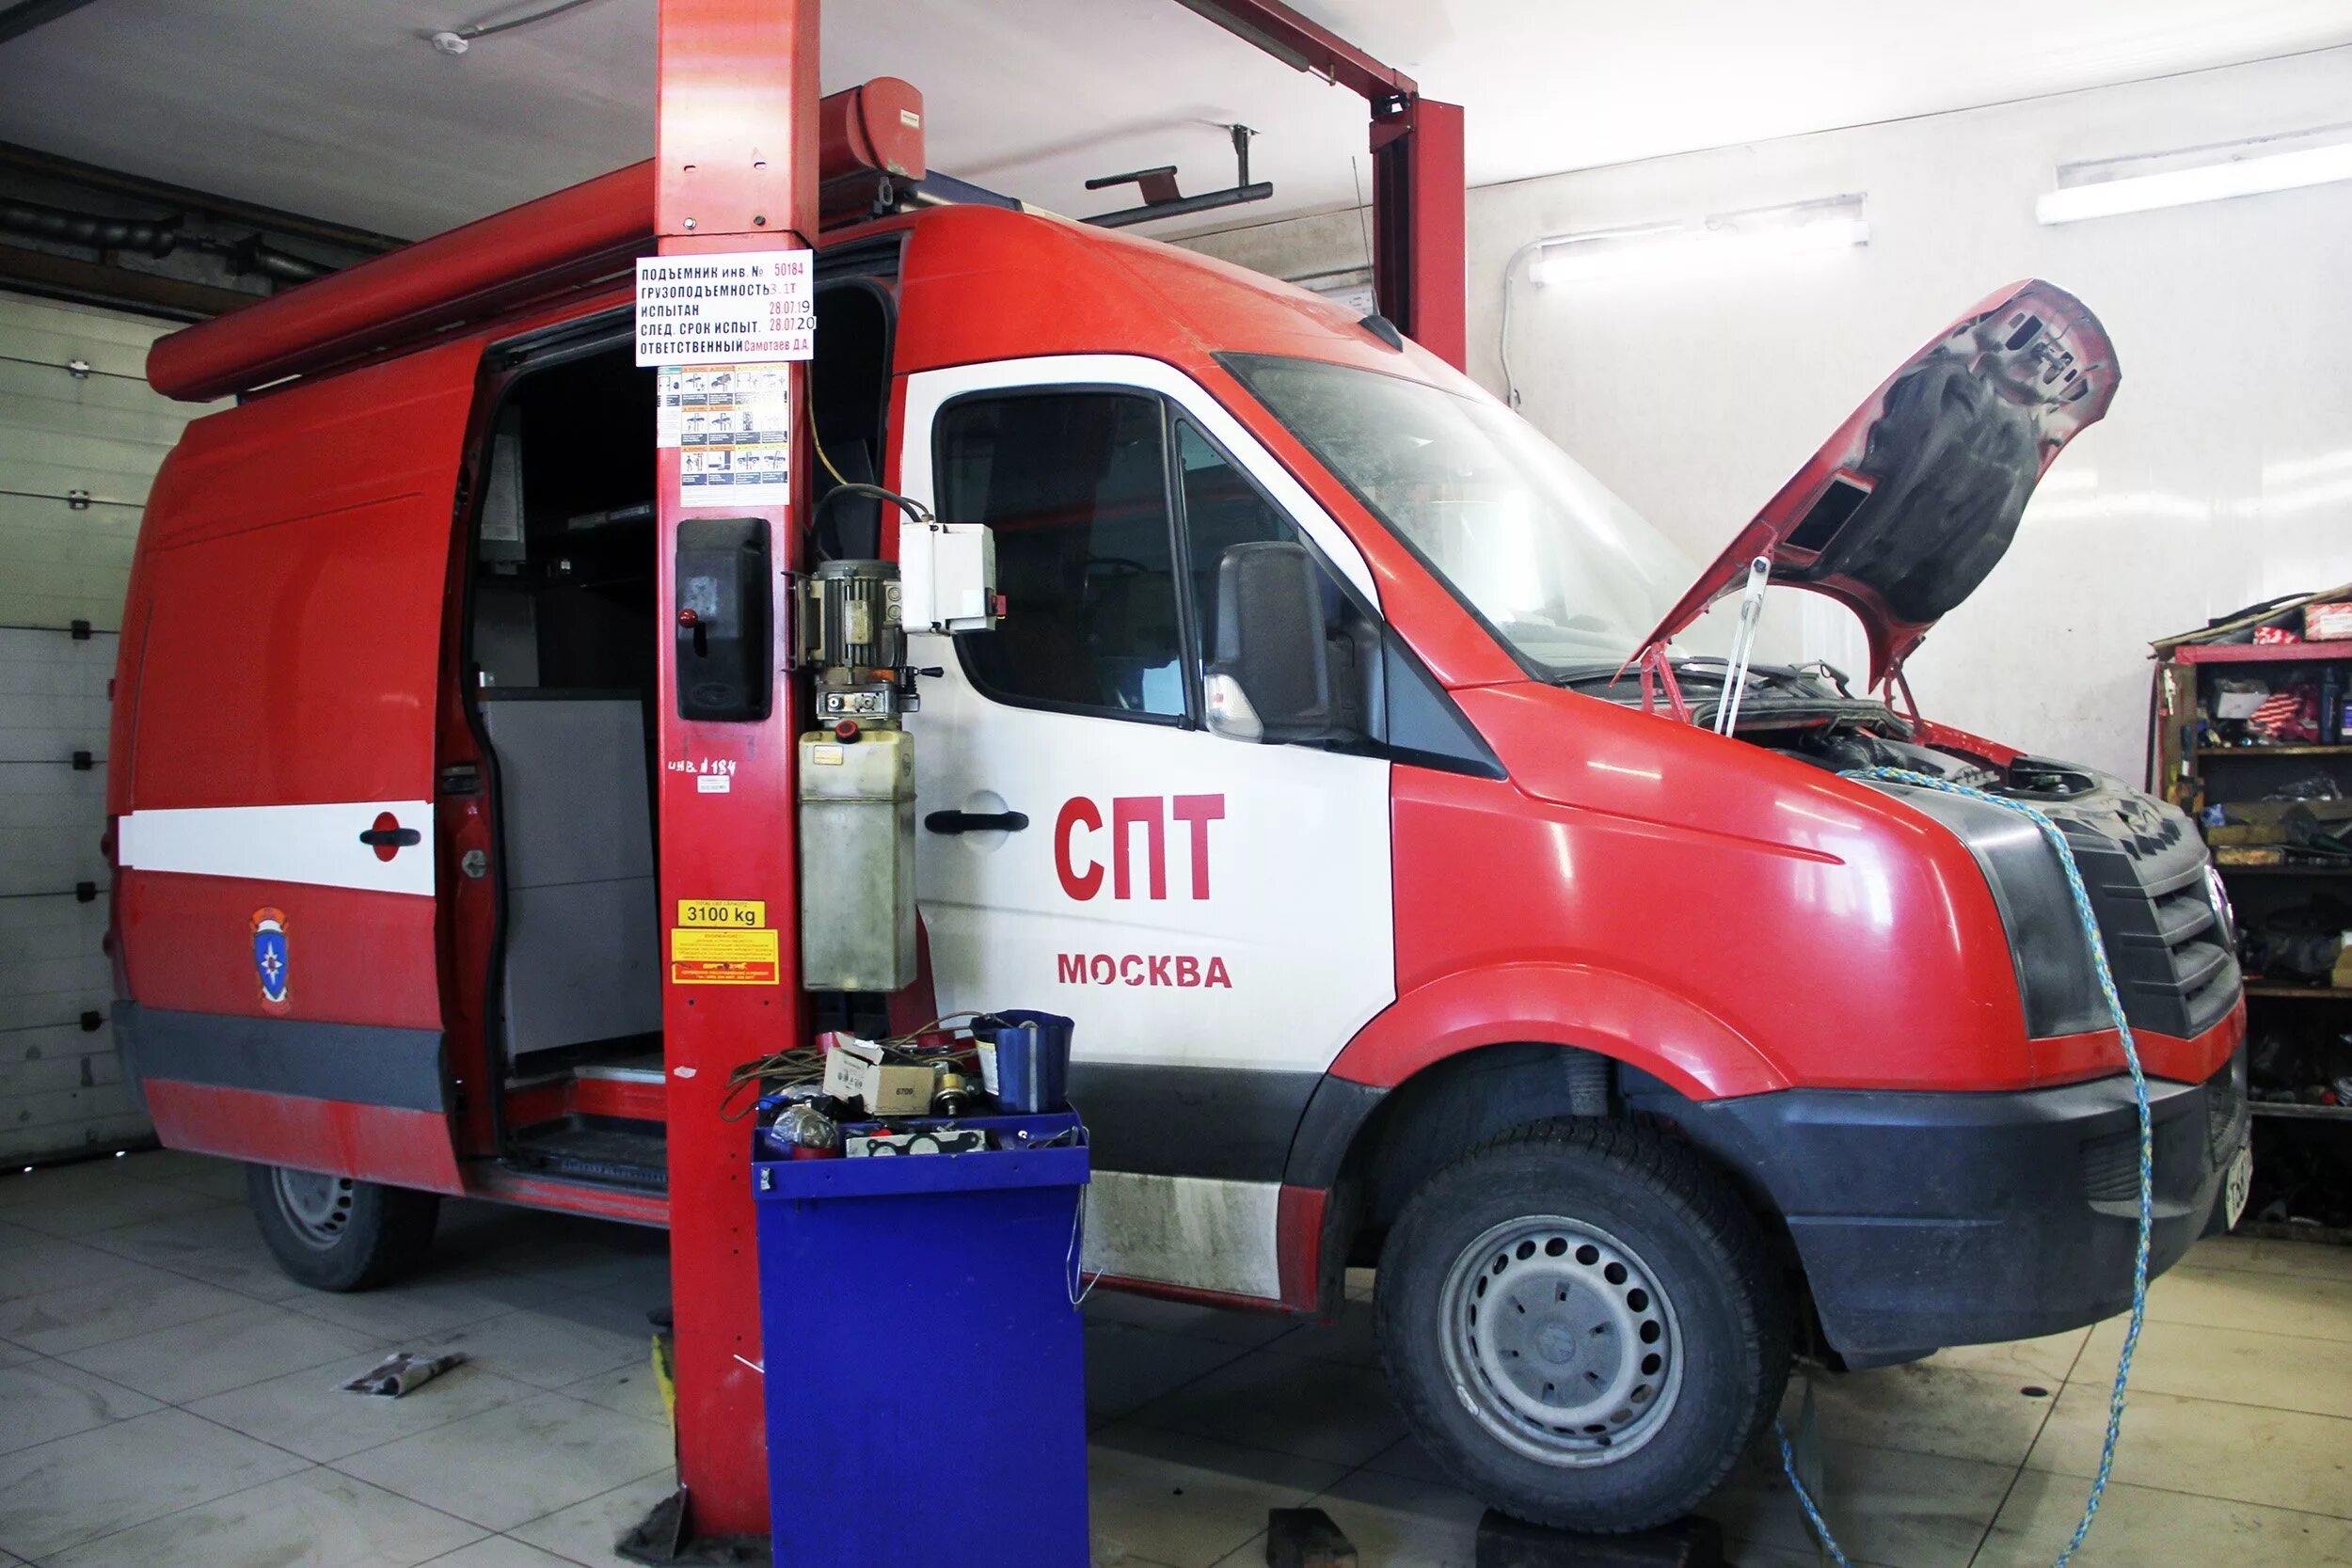 Пожарно спасательная система. ГБУ ПТЦ паст. Пожарный аварийно-спасательный автомобиль. Пожарная техника и оборудование. Техническое обслуживание пожарных автомобилей.